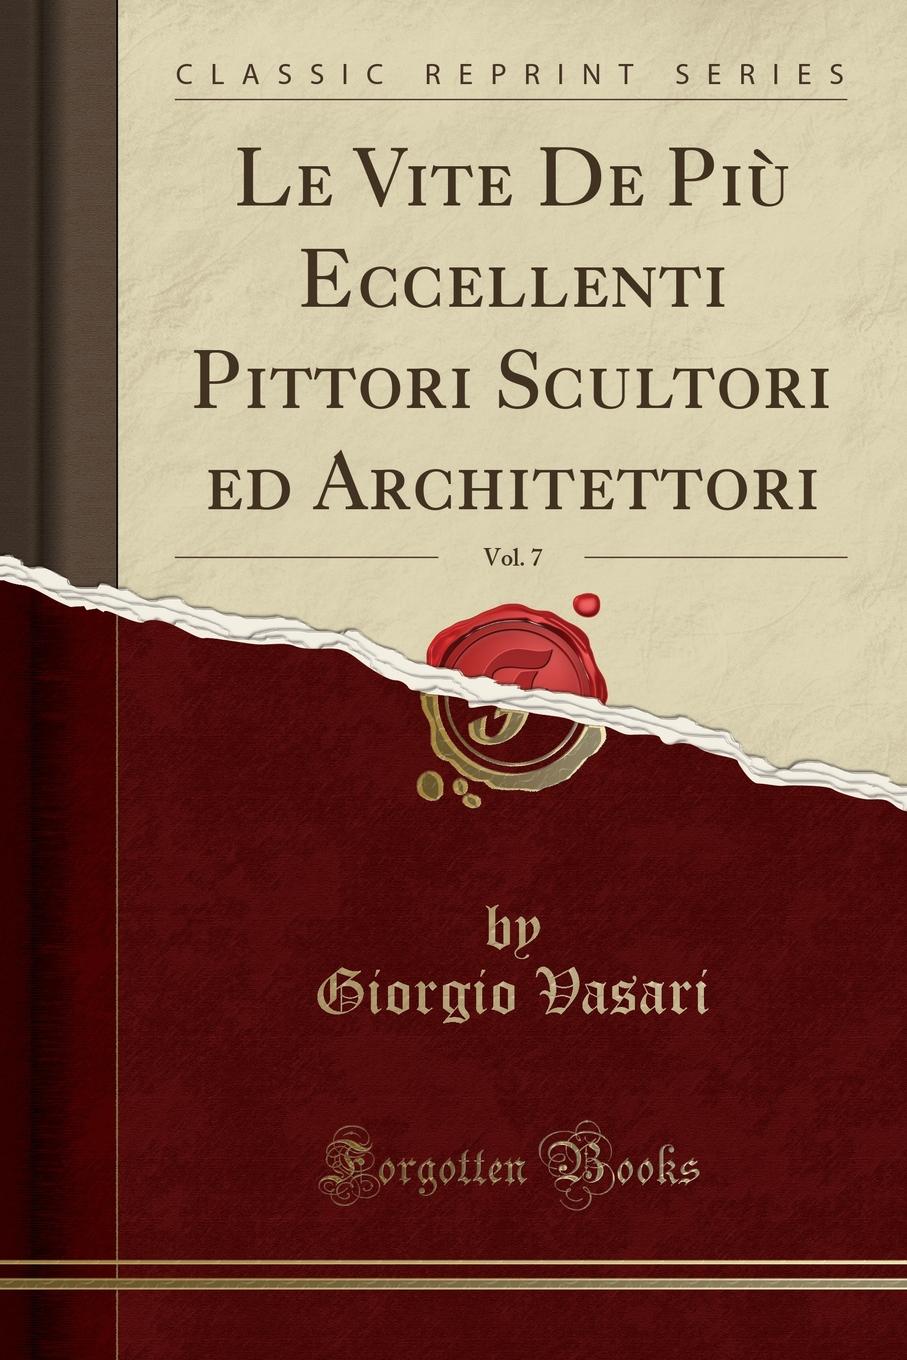 Le Vite De Piu Eccellenti Pittori Scultori ed Architettori, Vol. 7 (Classic Reprint)